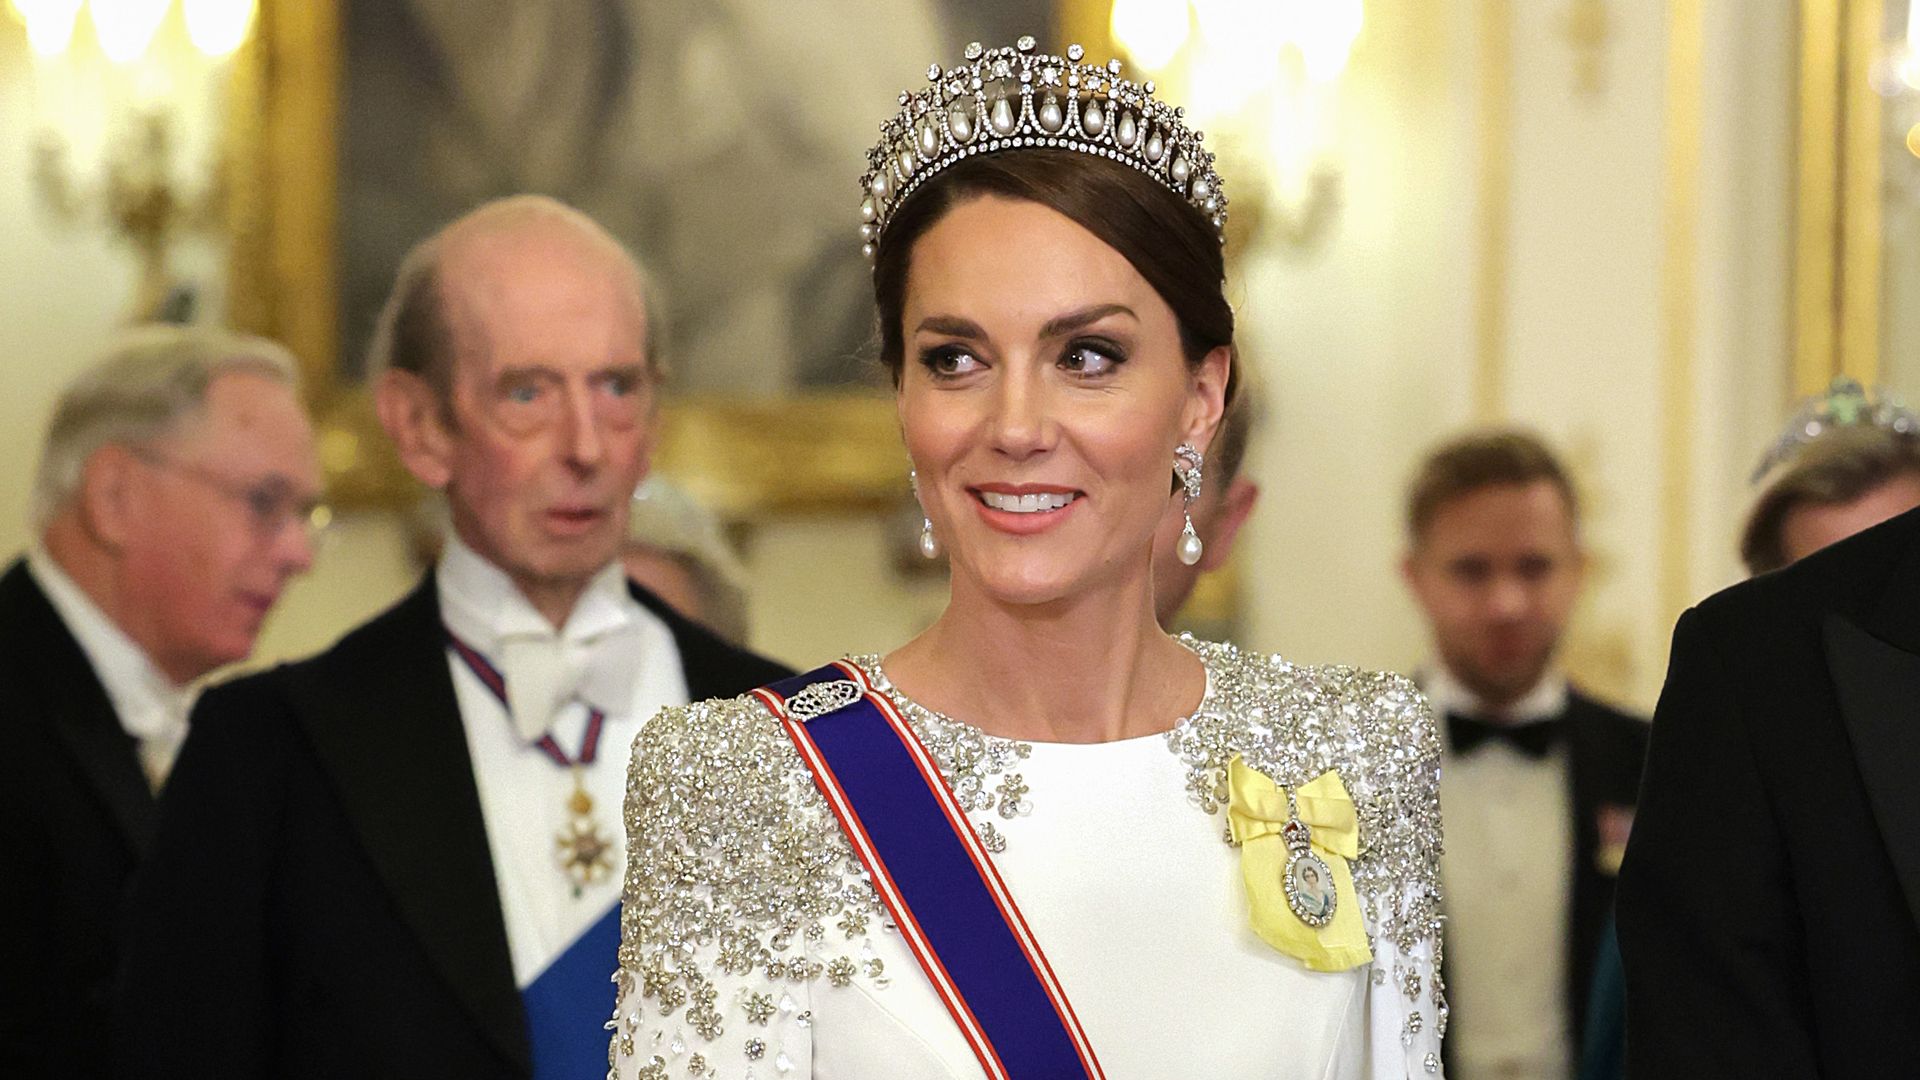 Kate Middleton wearing Lover's Knot tiara at state banquet